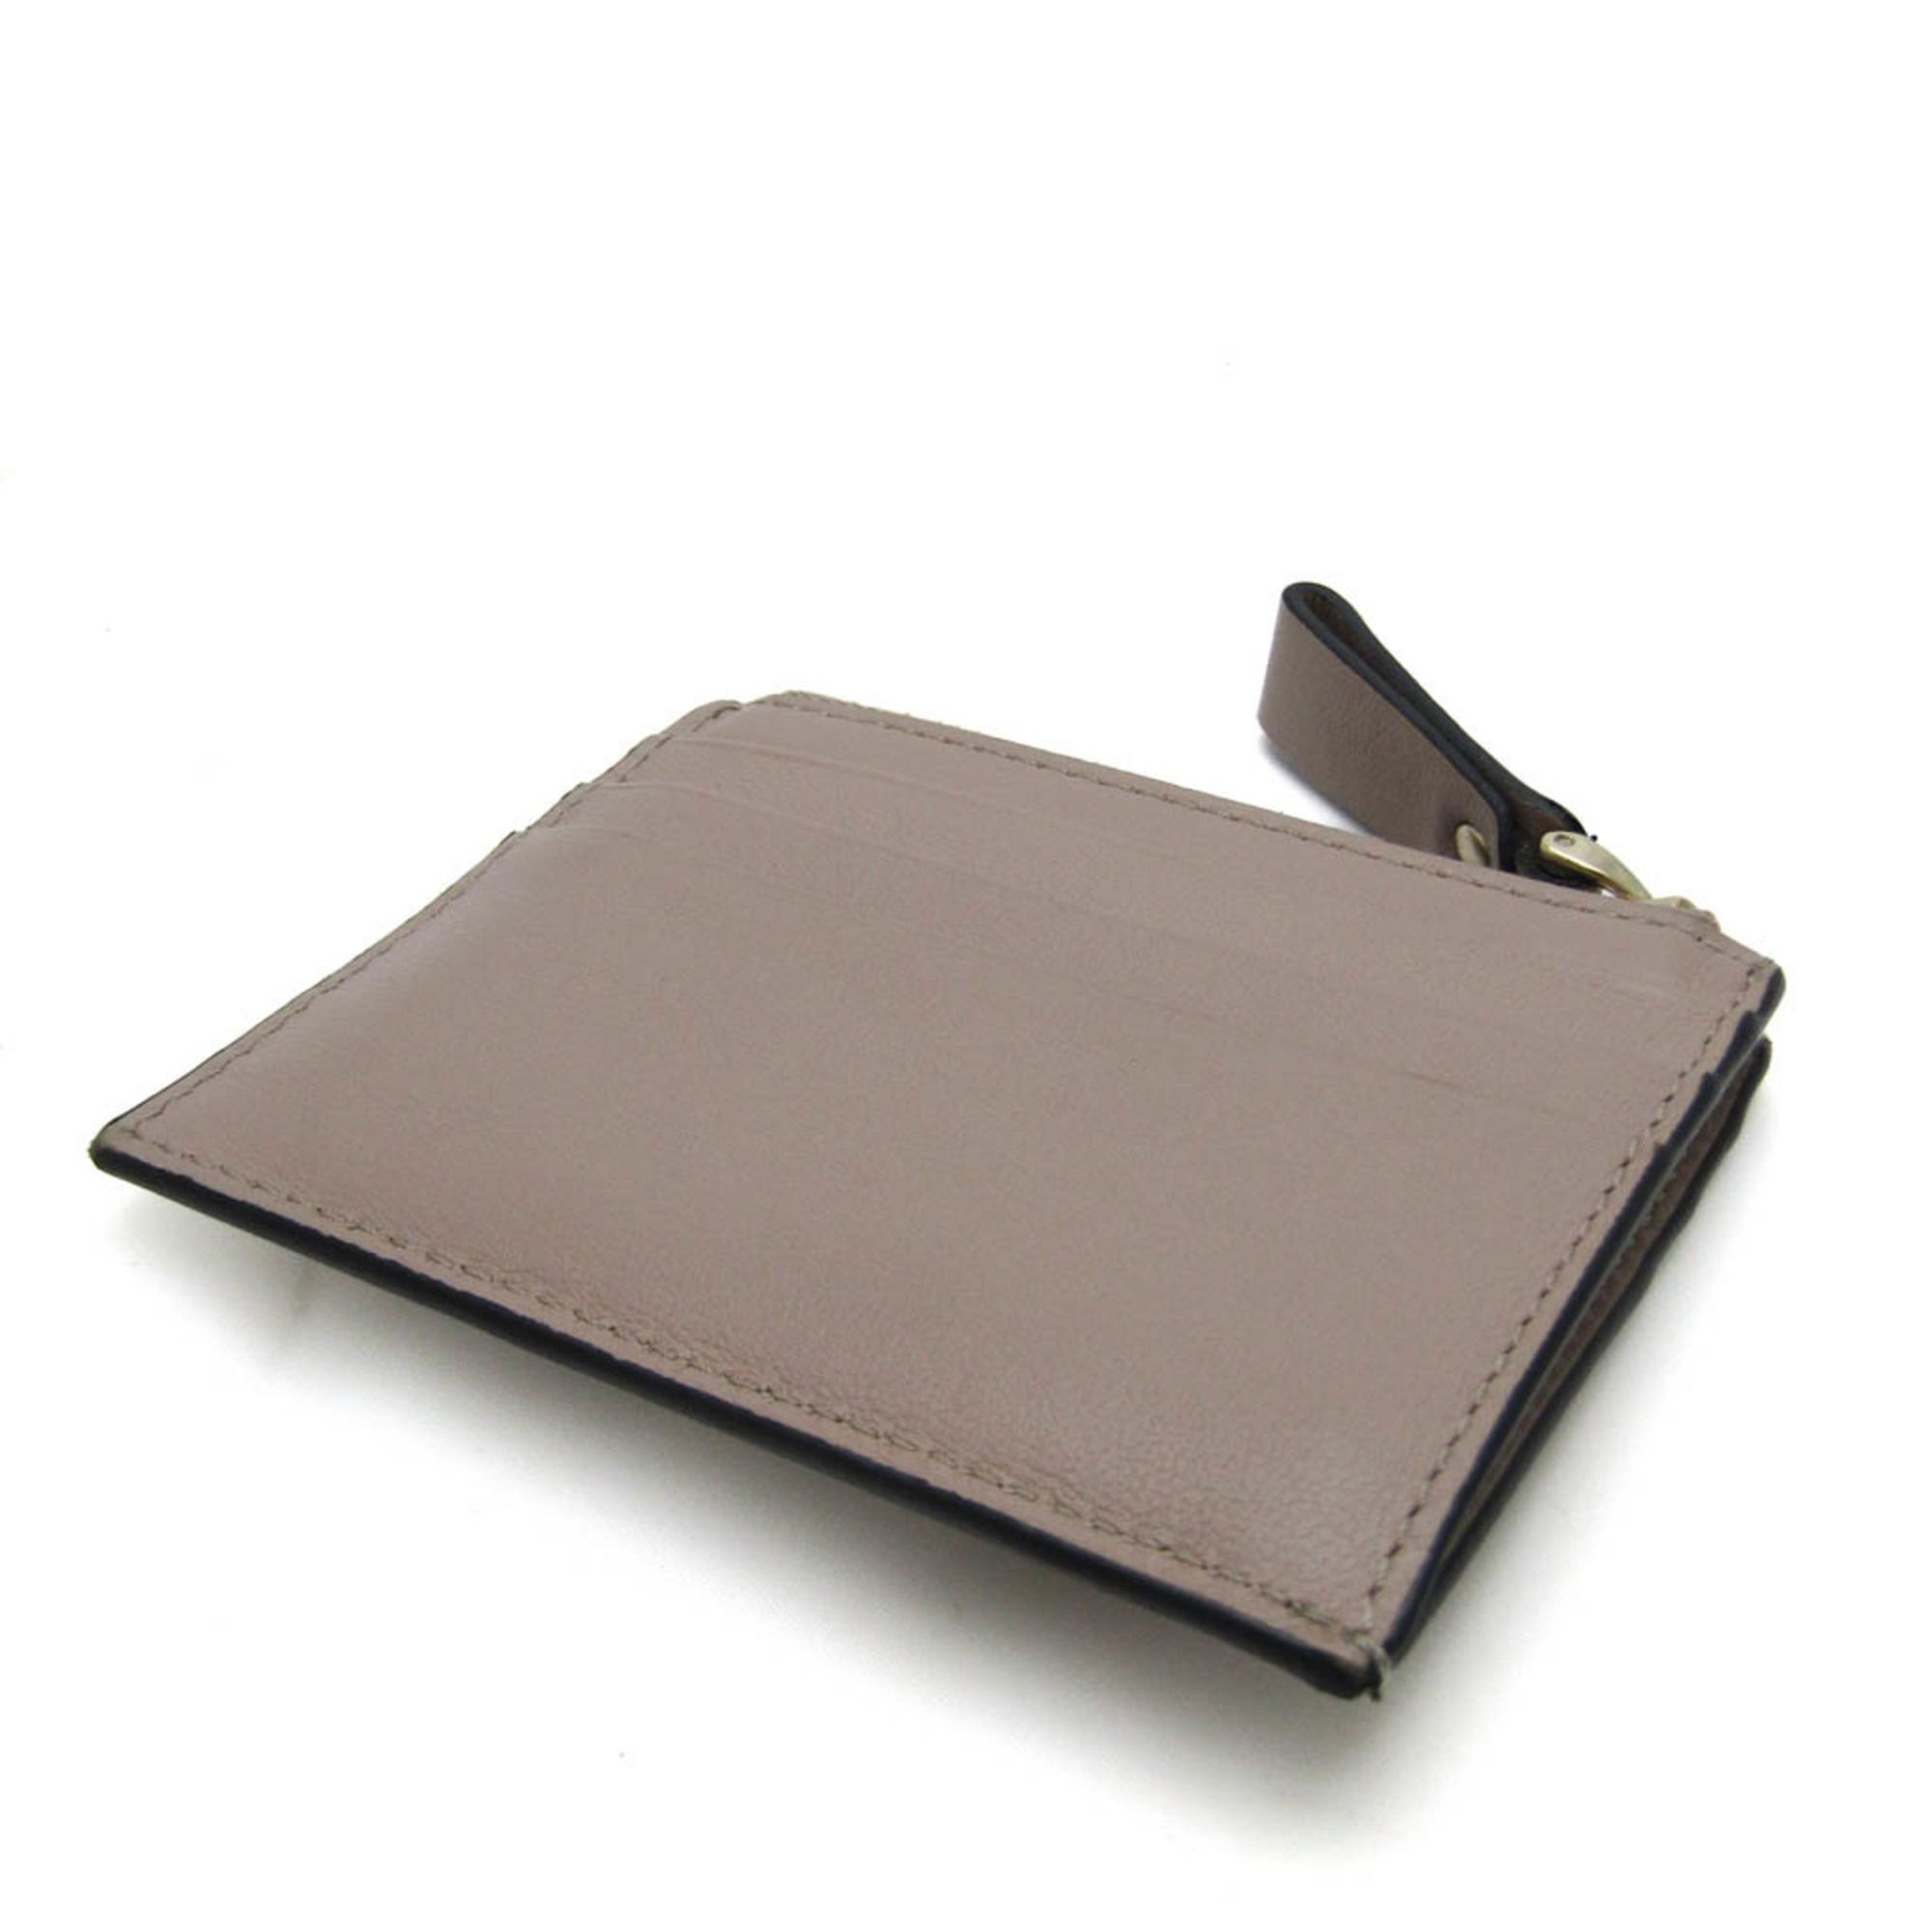 Valentino Garavani Valentino Garavani Lockstuds TW2P0T35BOL Leather Card Case Pink Beige Size ONE SIZE - 2 Preview